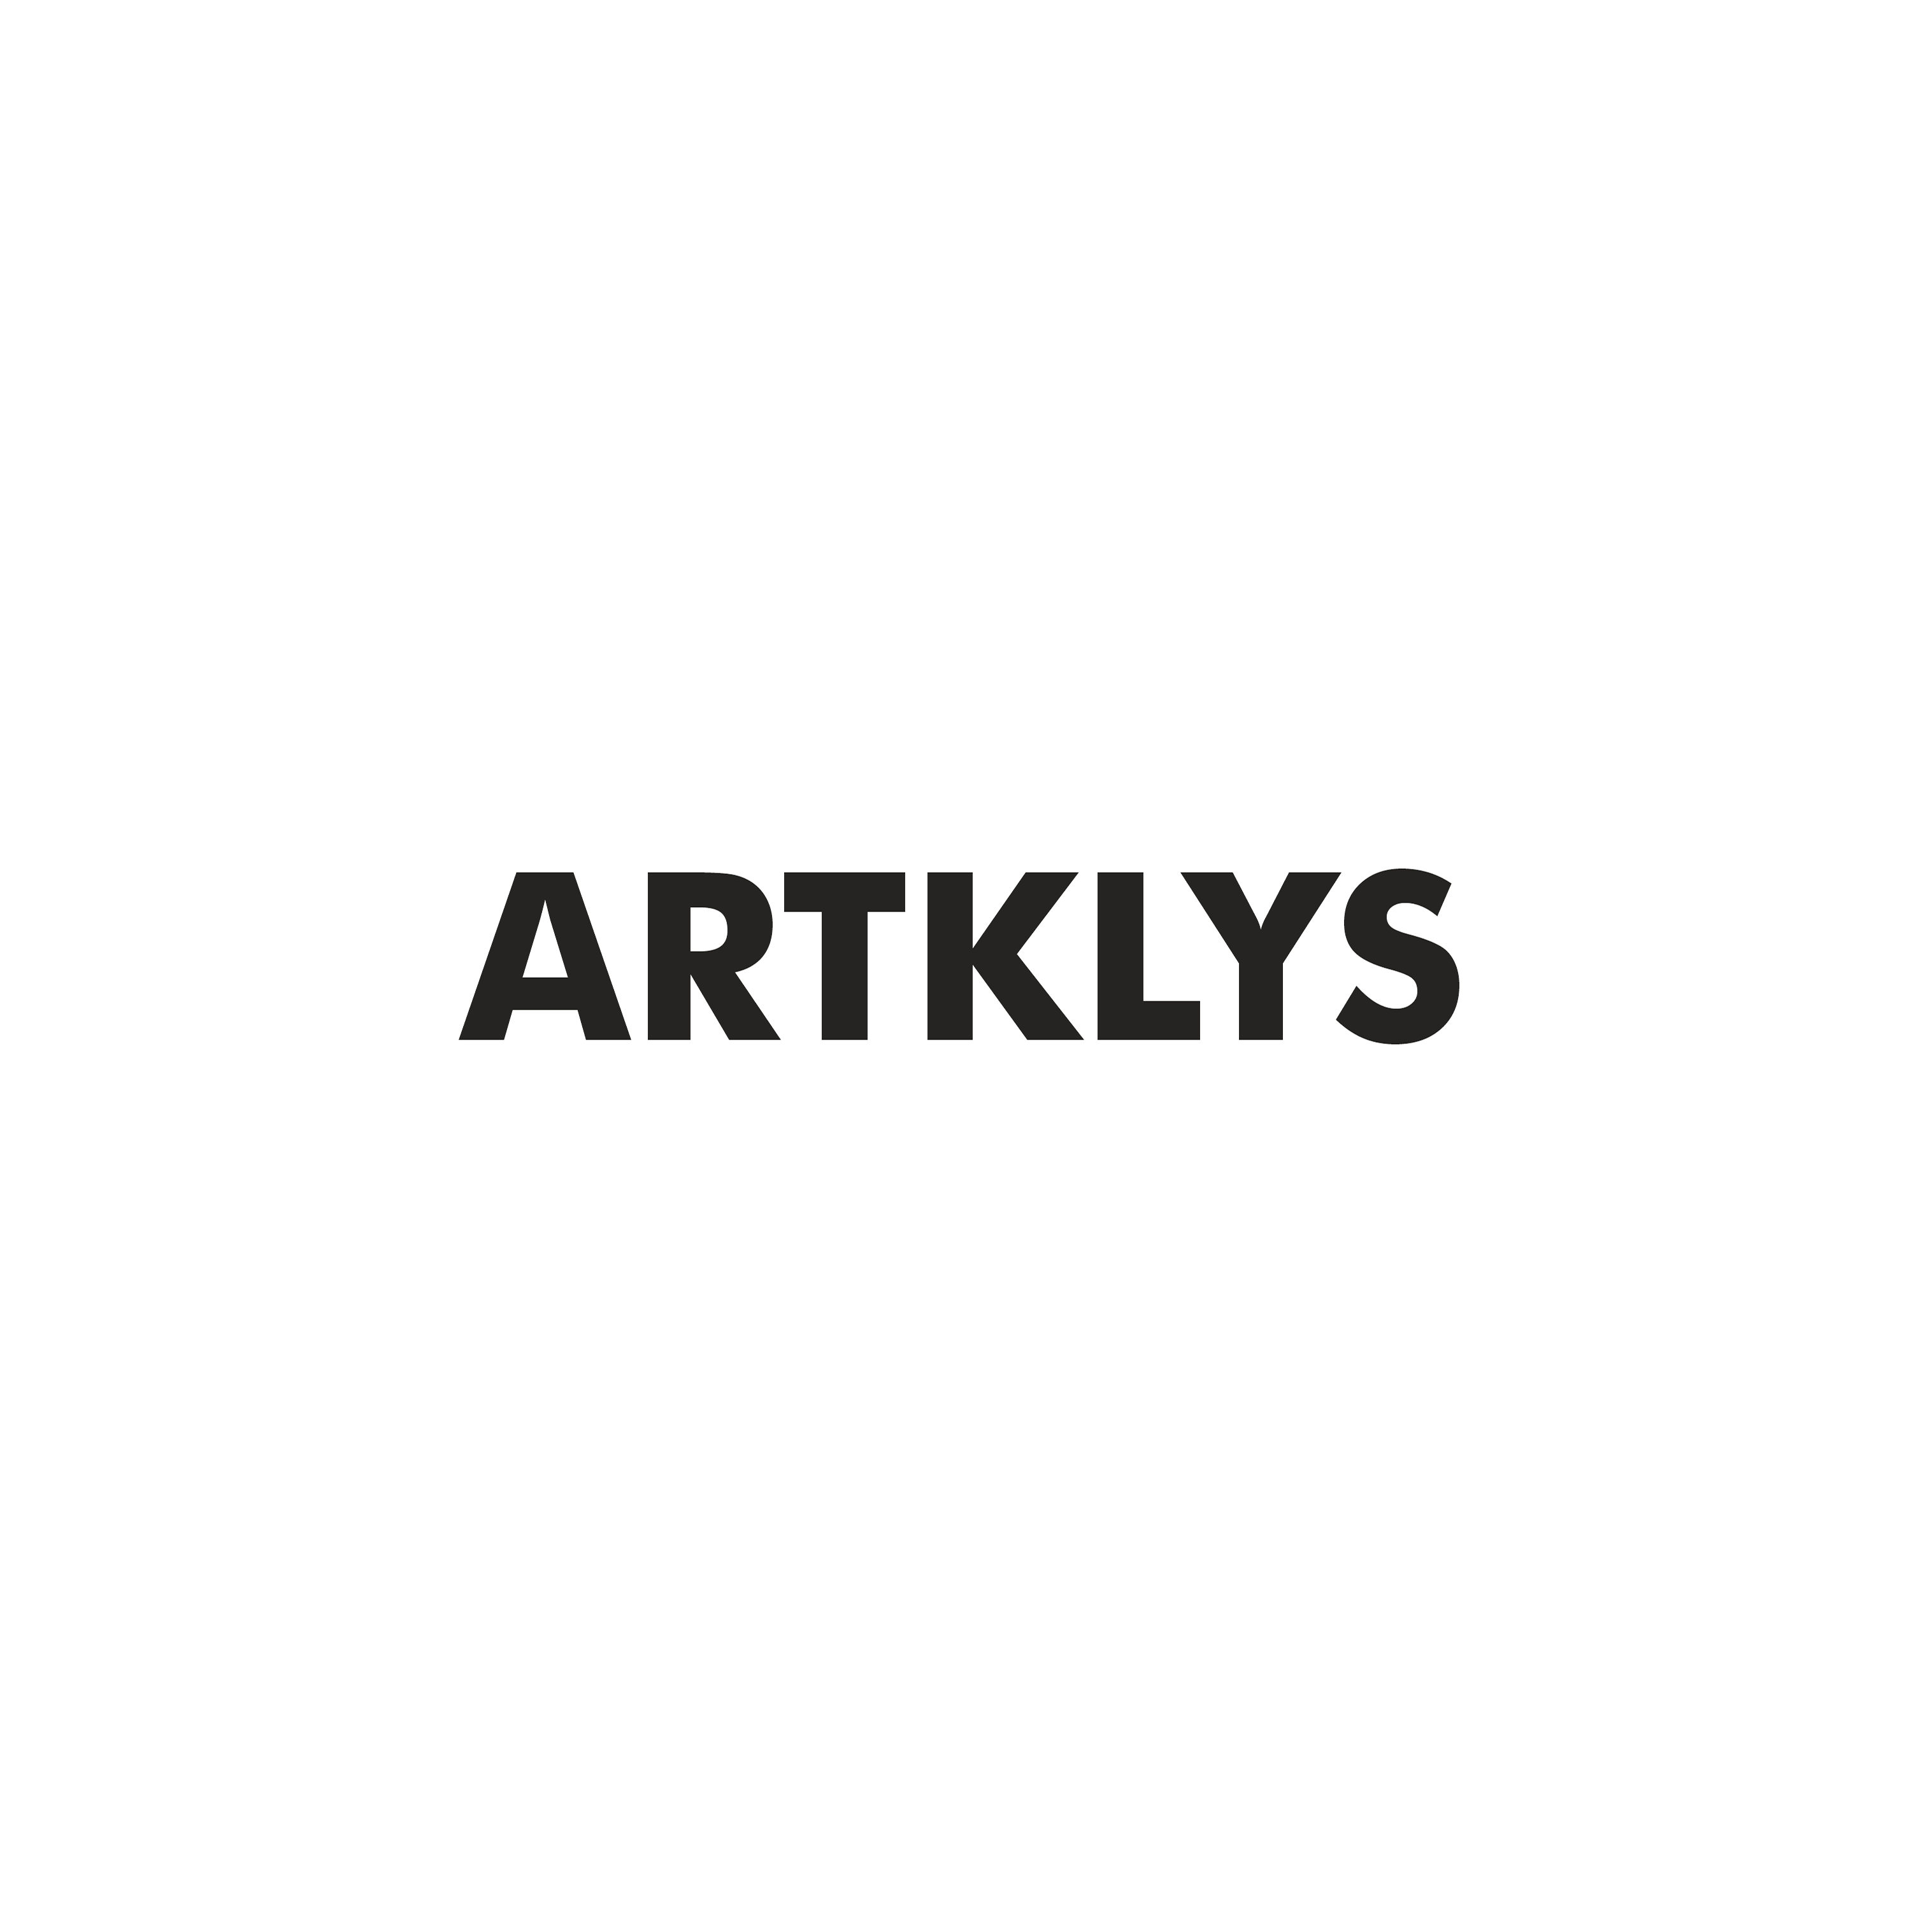 ARKLYS